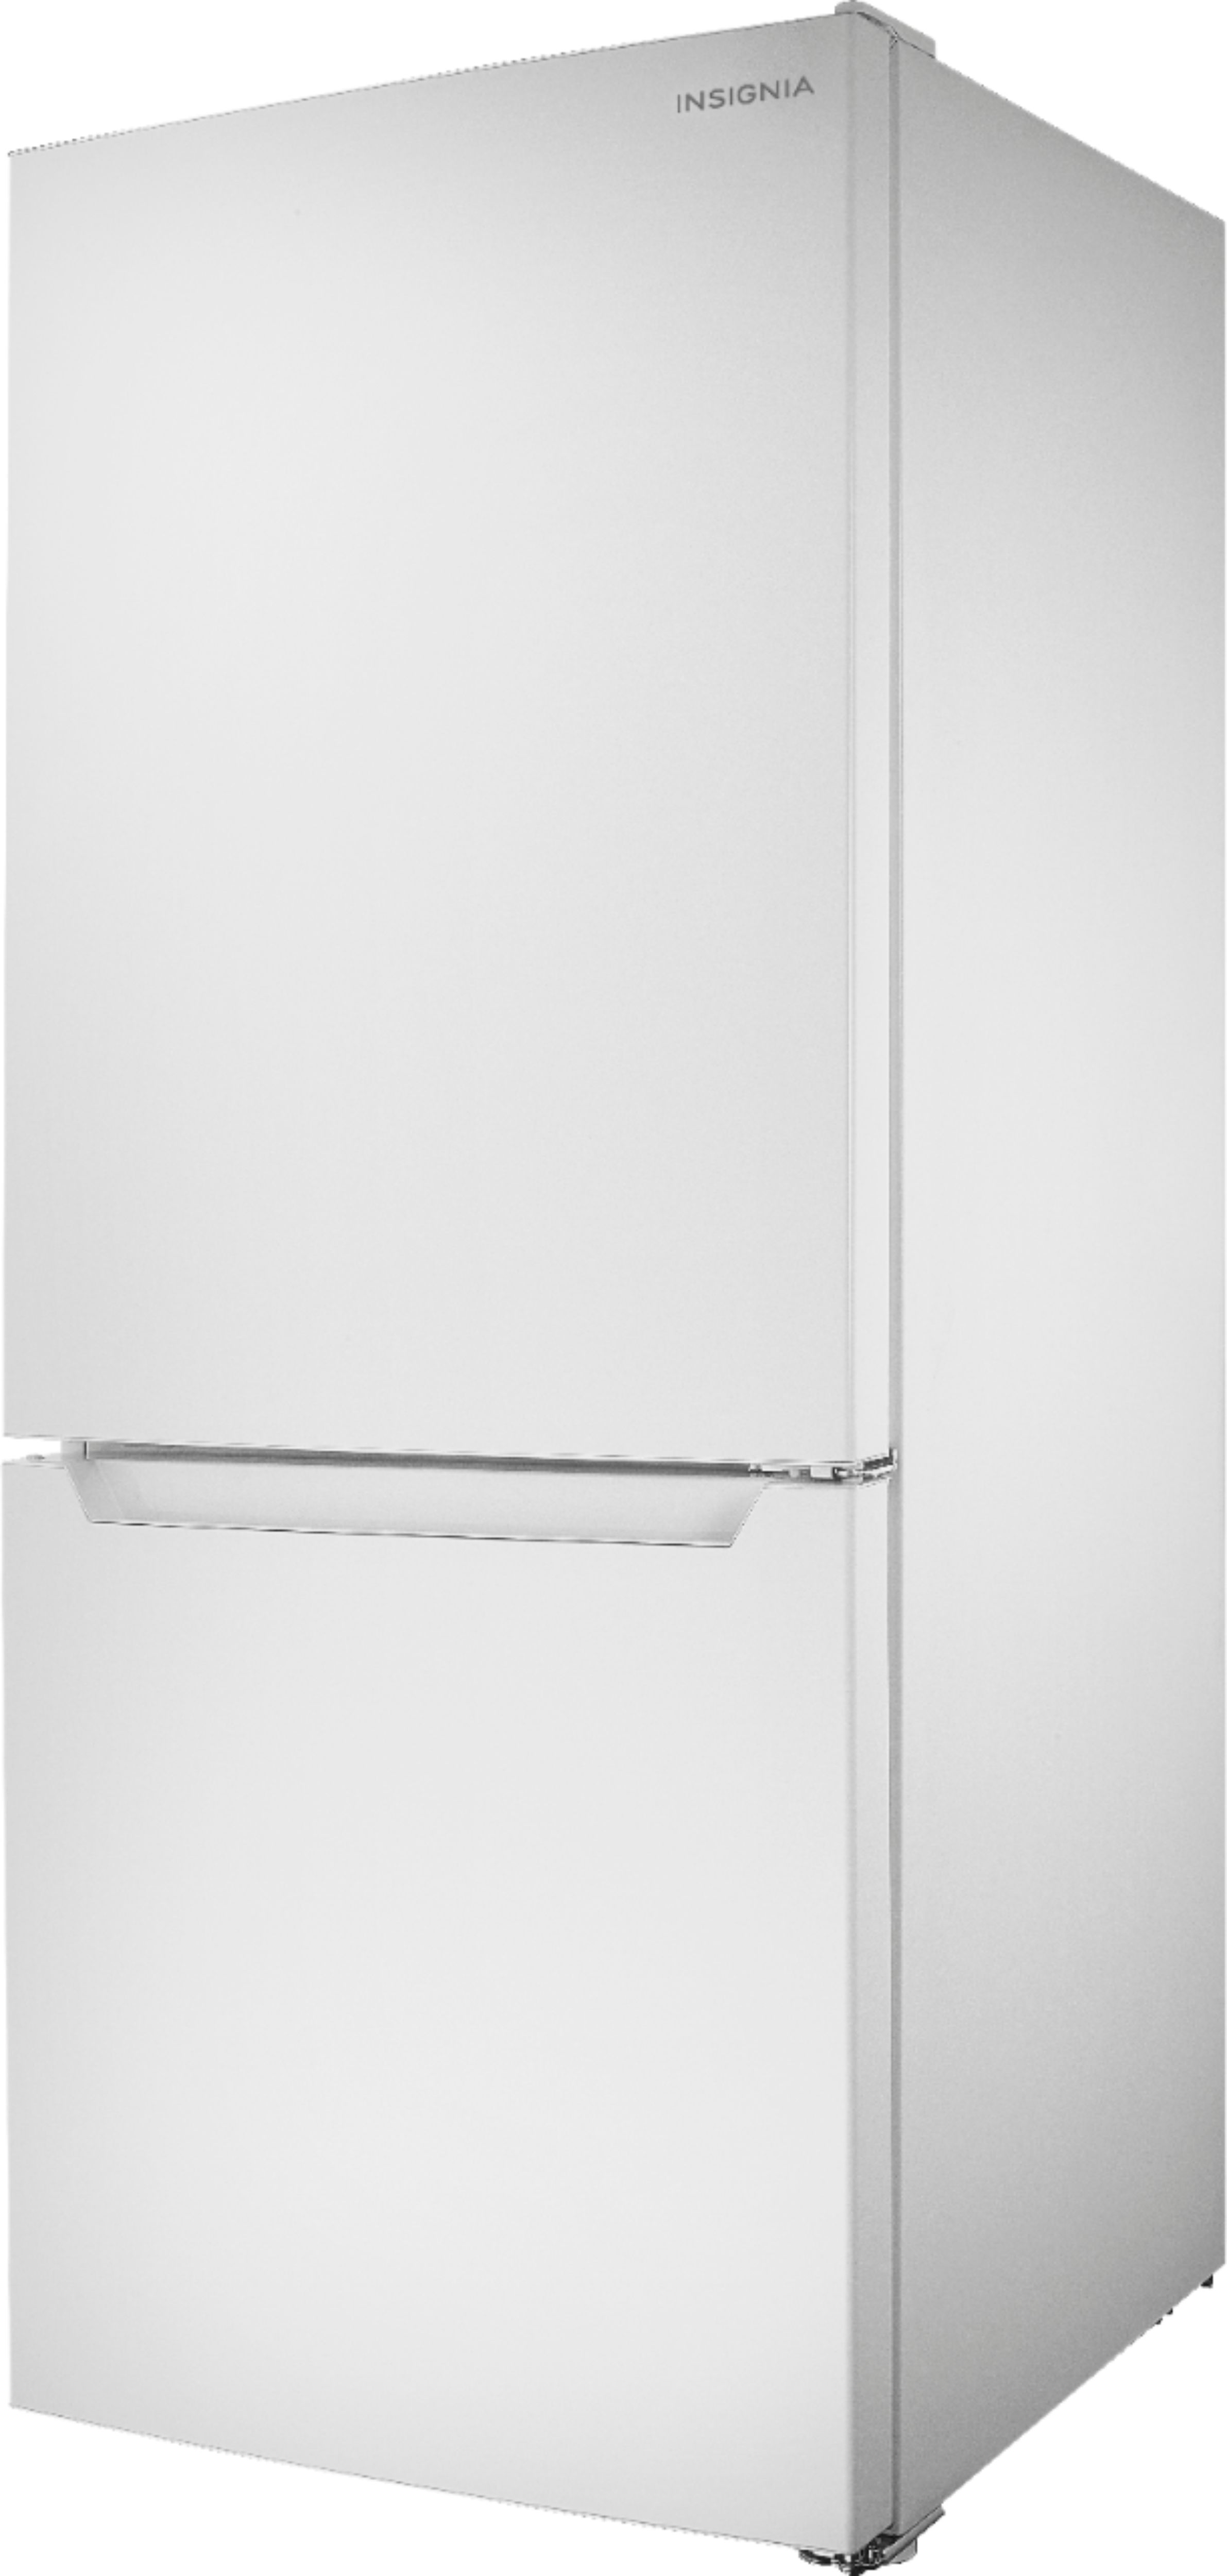 Left View: Amana - 18.7 Cu. Ft. Bottom-Freezer Refrigerator - Black